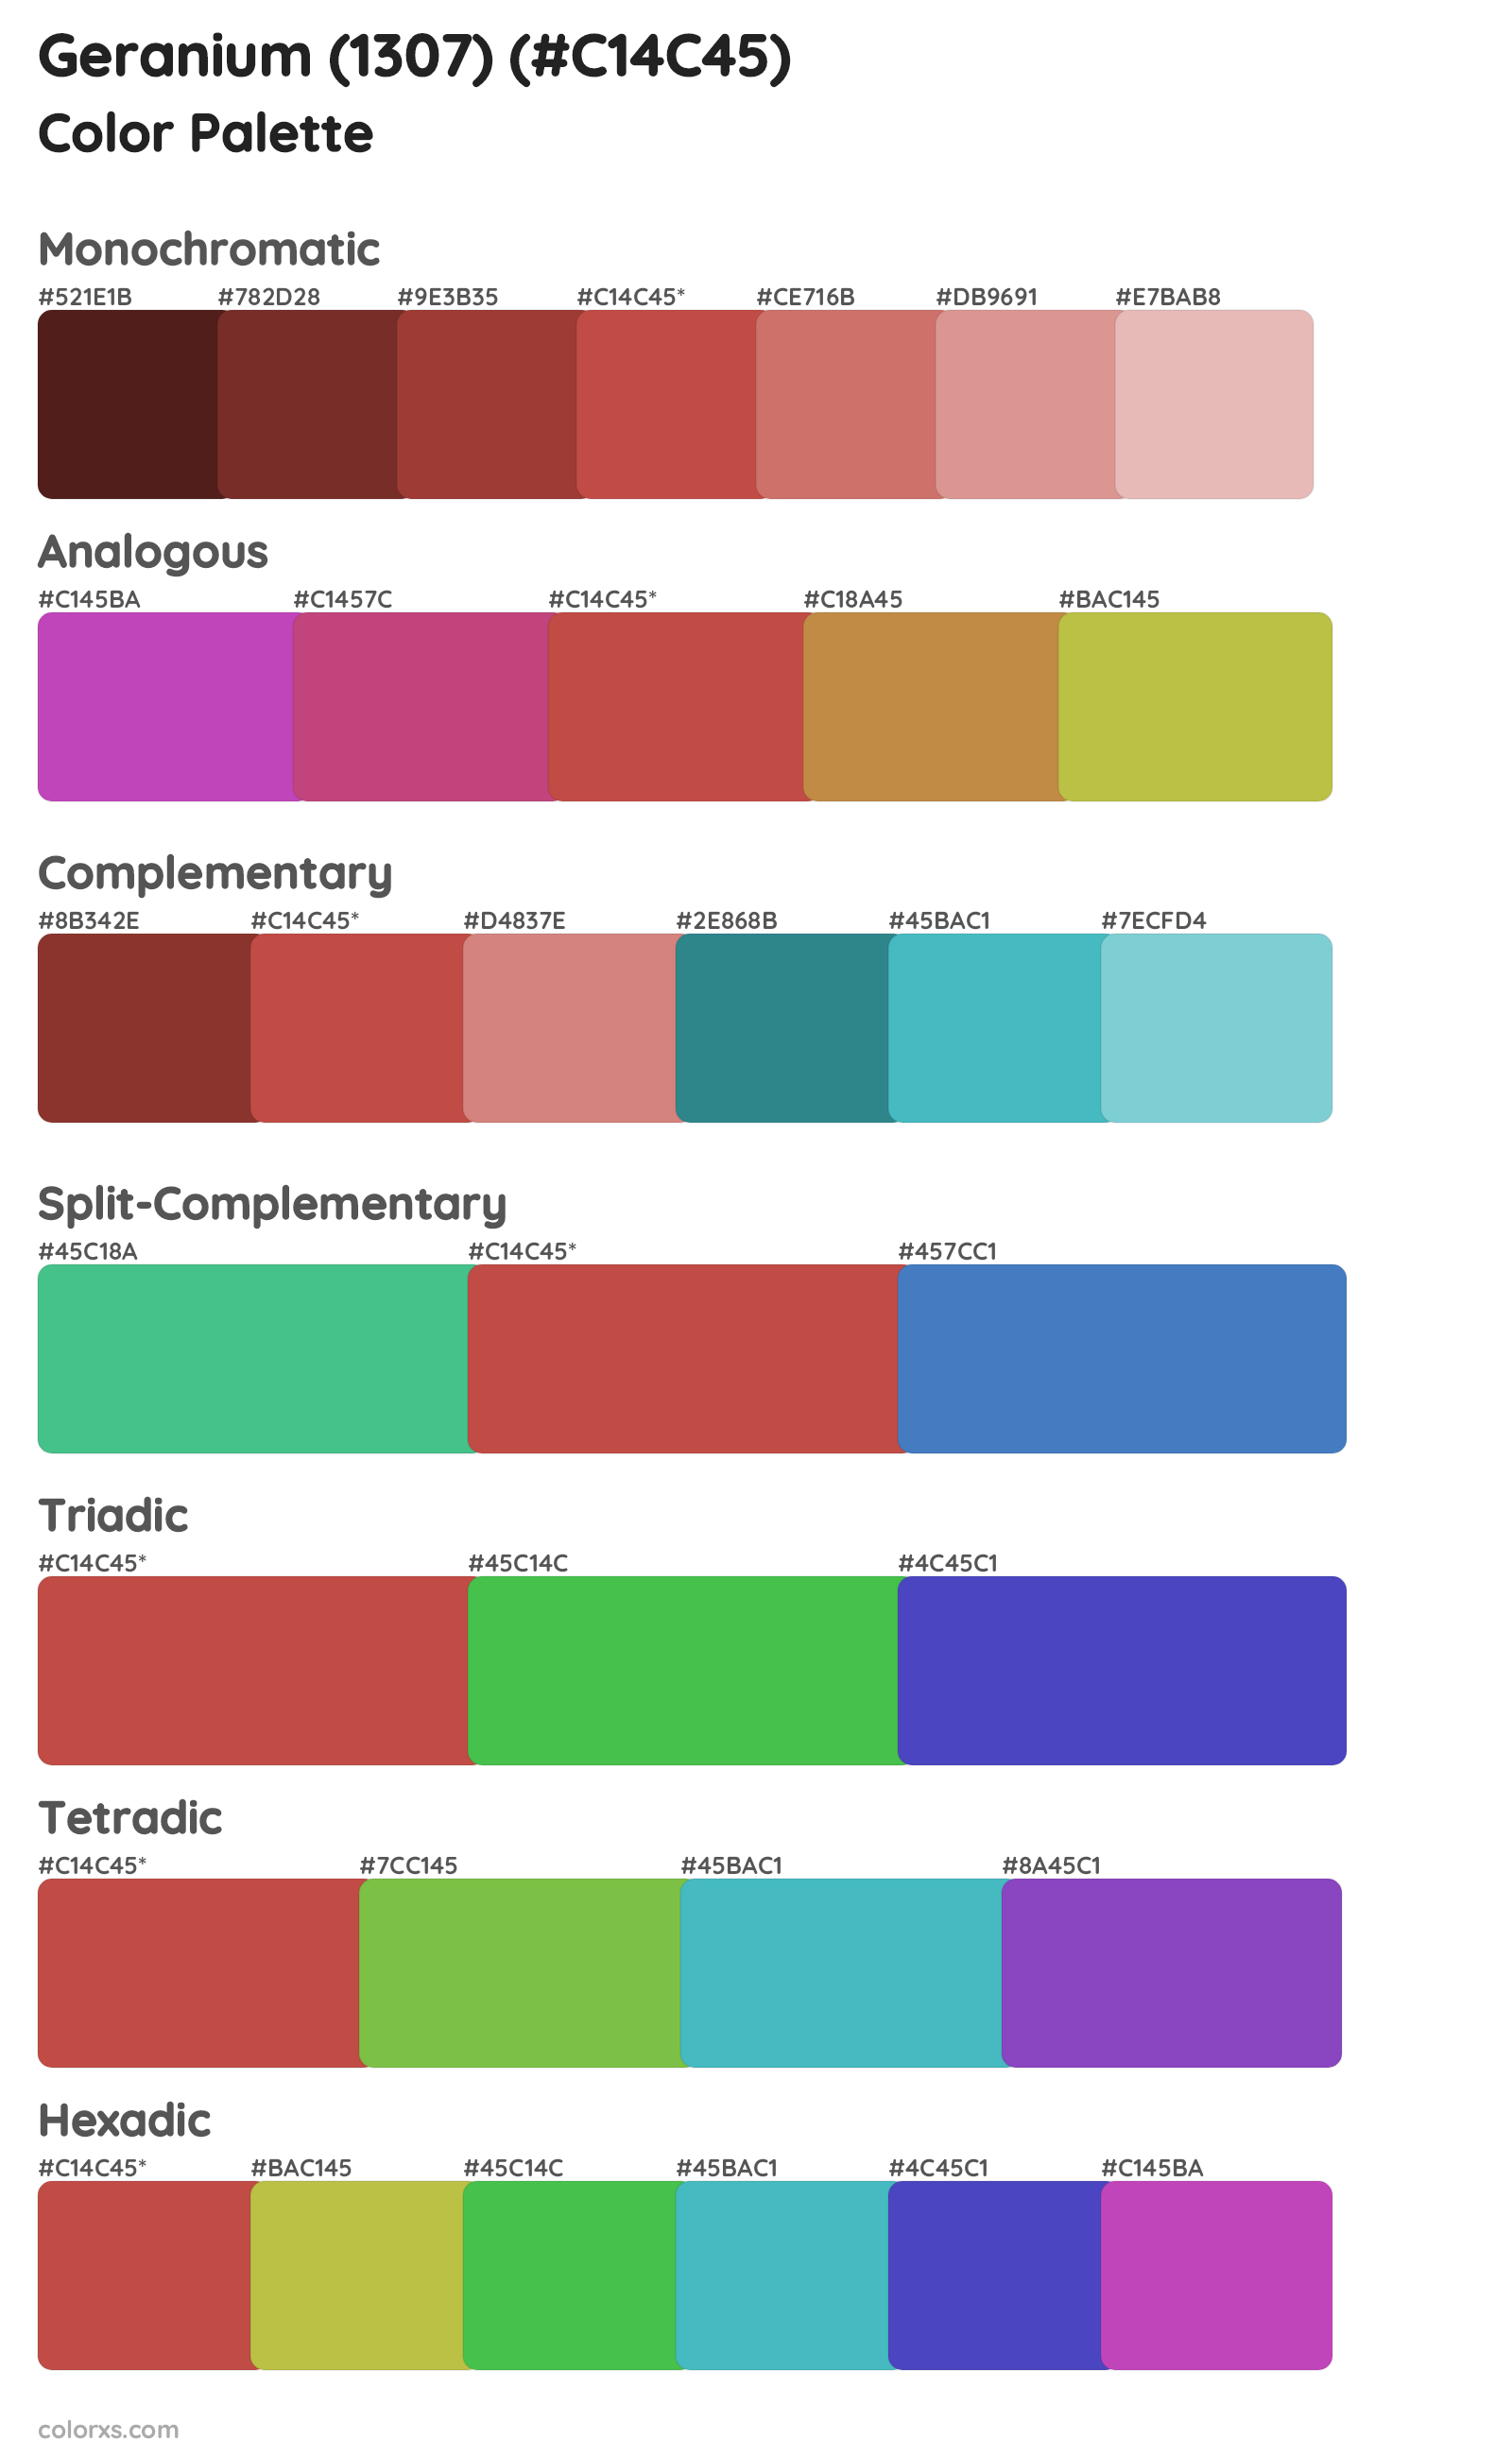 Geranium (1307) Color Scheme Palettes